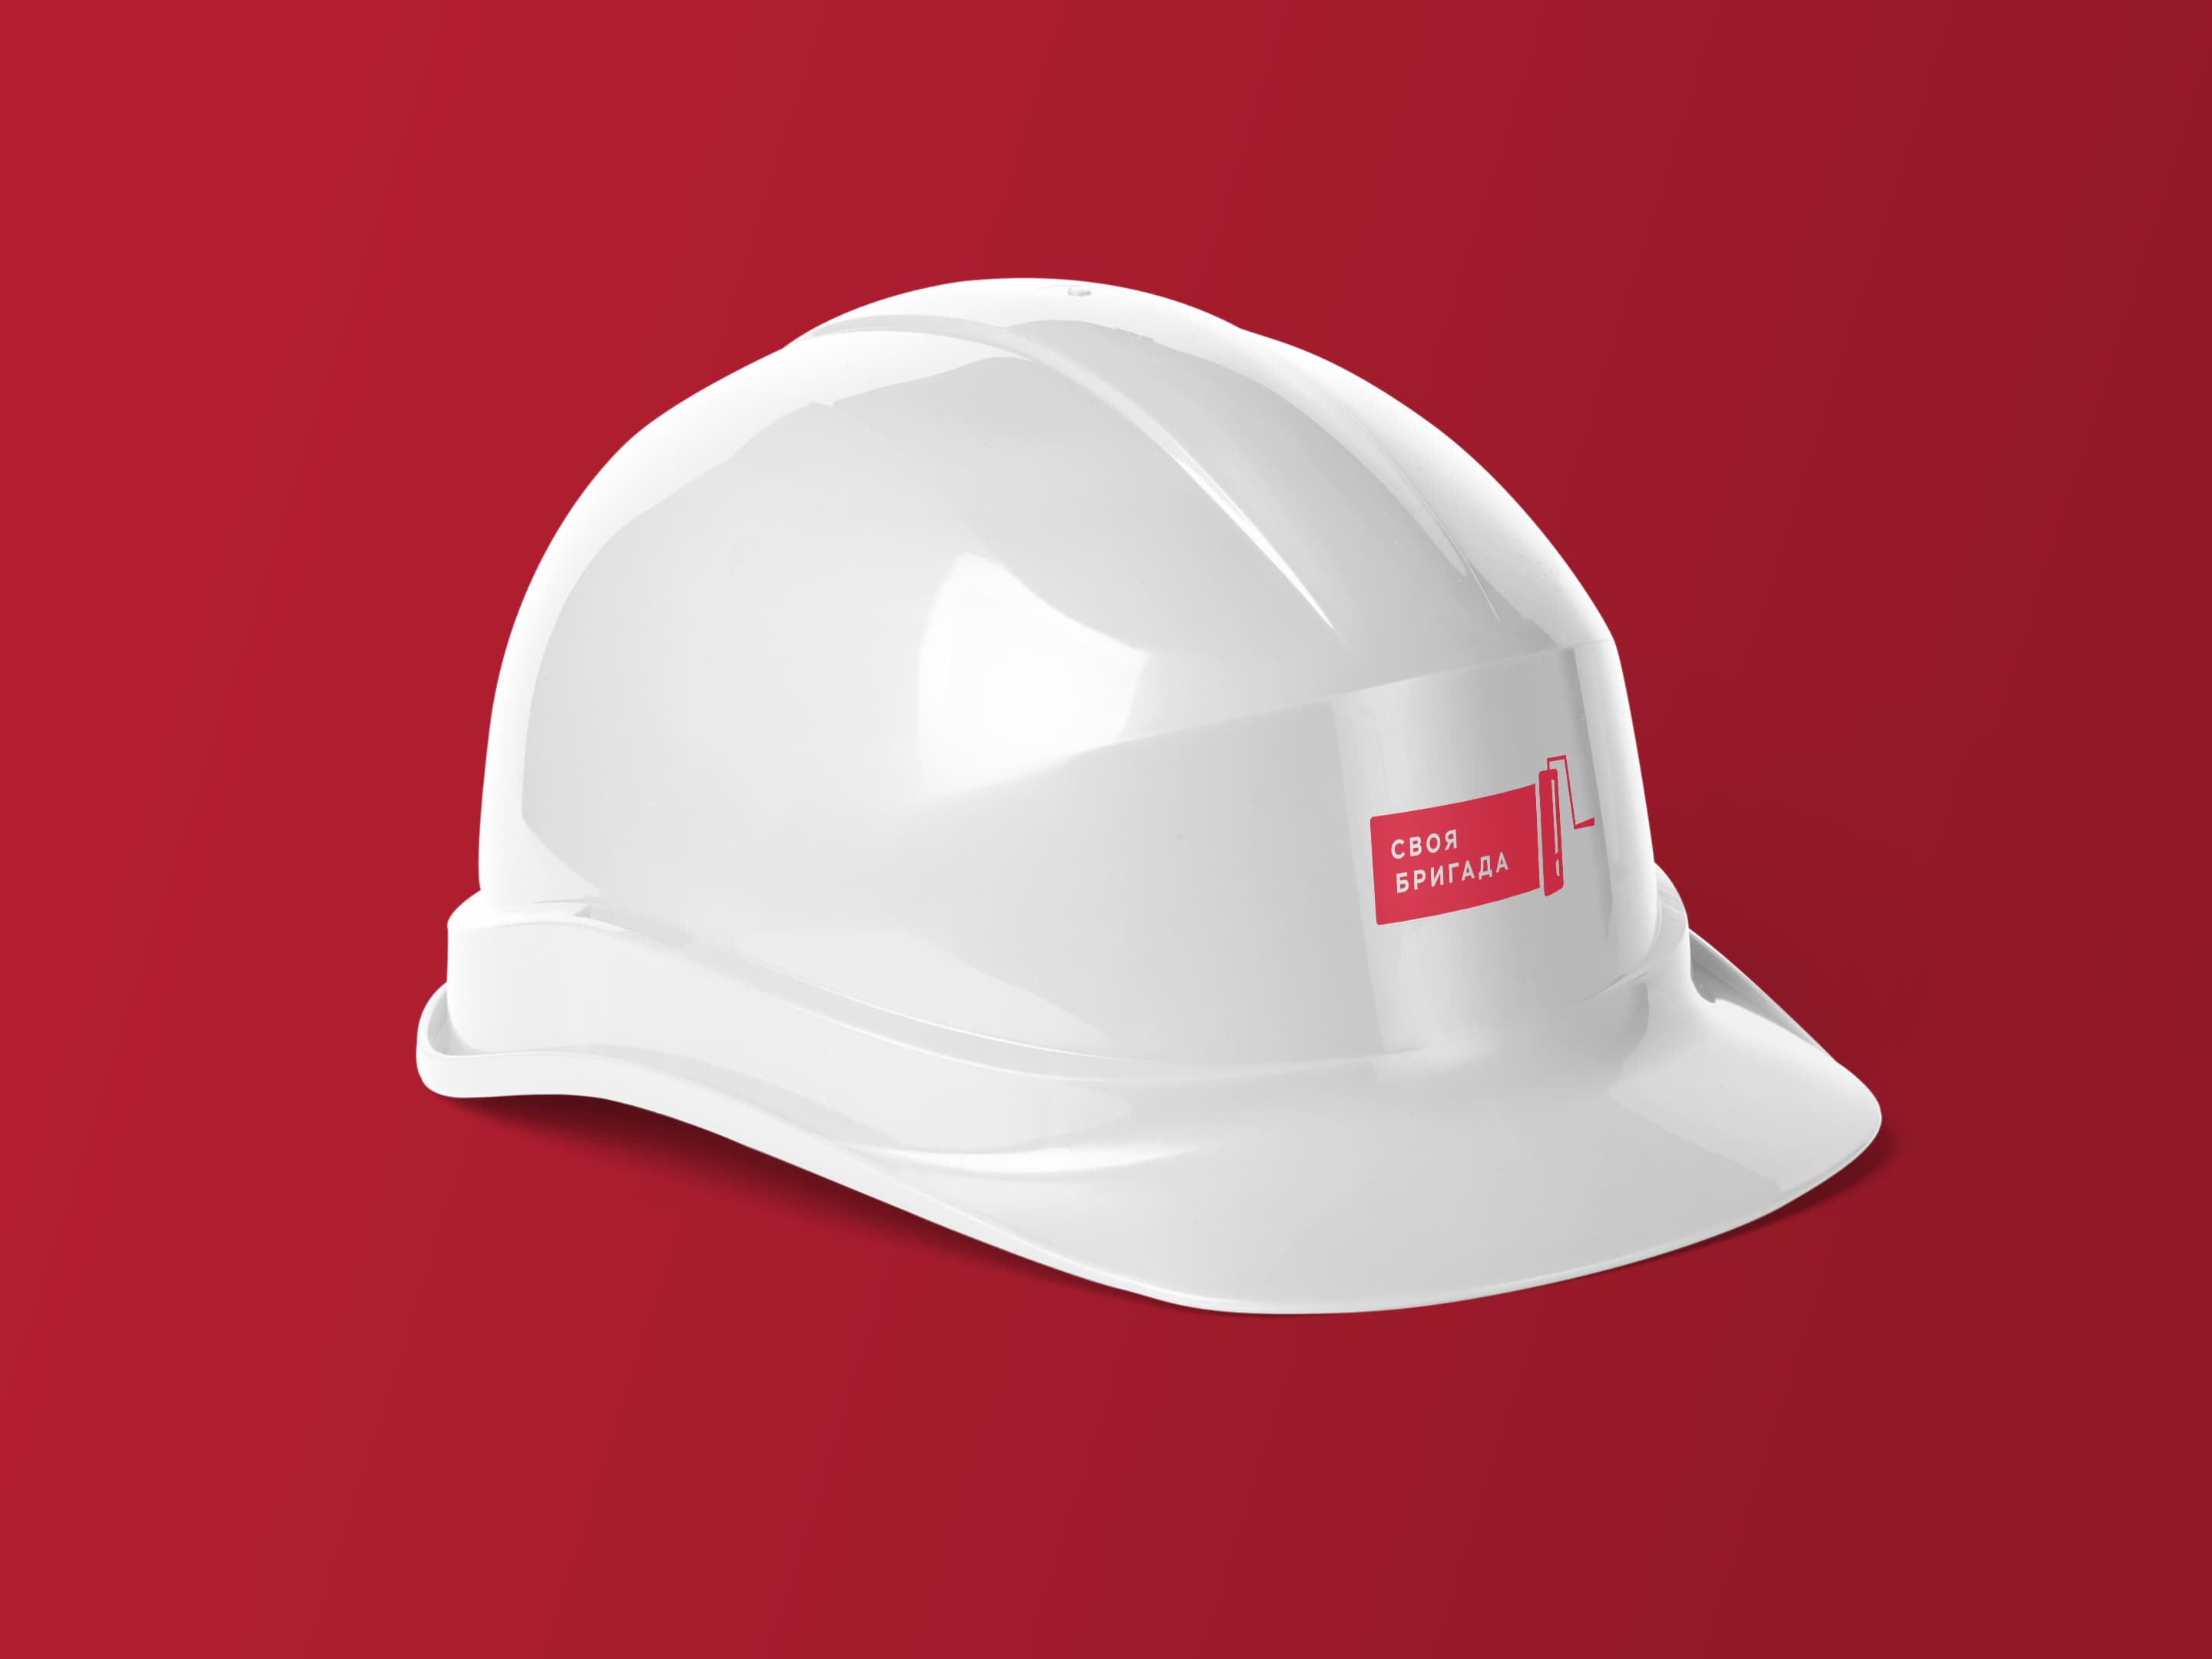 Фирменная белая каска с красным логотипом.